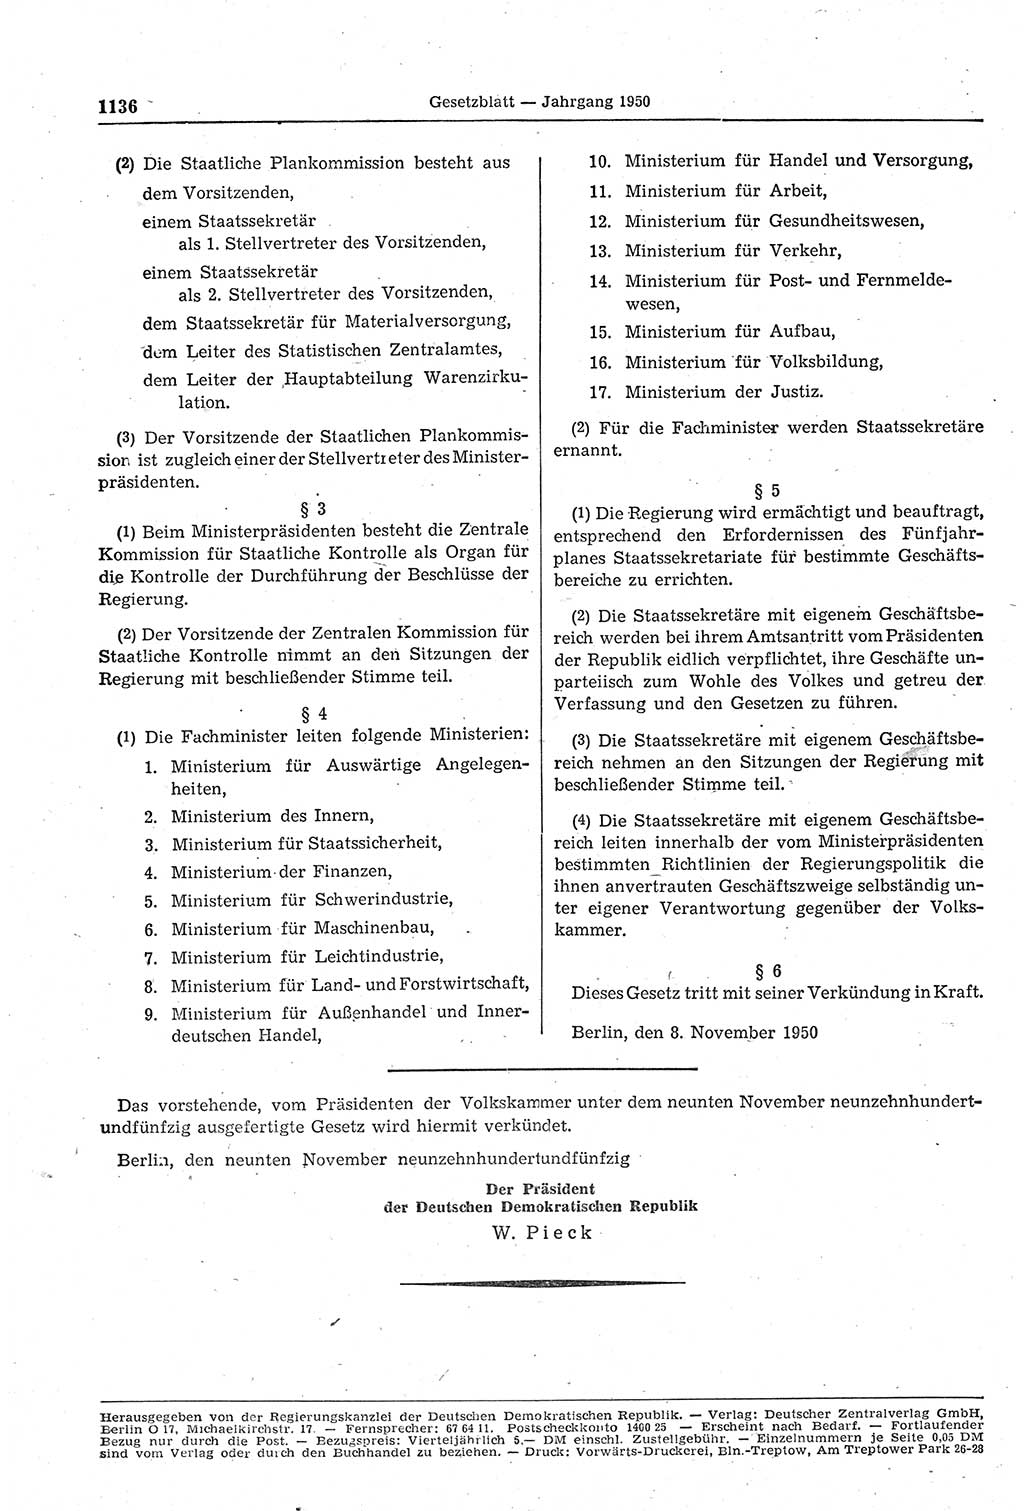 Gesetzblatt (GBl.) der Deutschen Demokratischen Republik (DDR) 1950, Seite 1136 (GBl. DDR 1950, S. 1136)